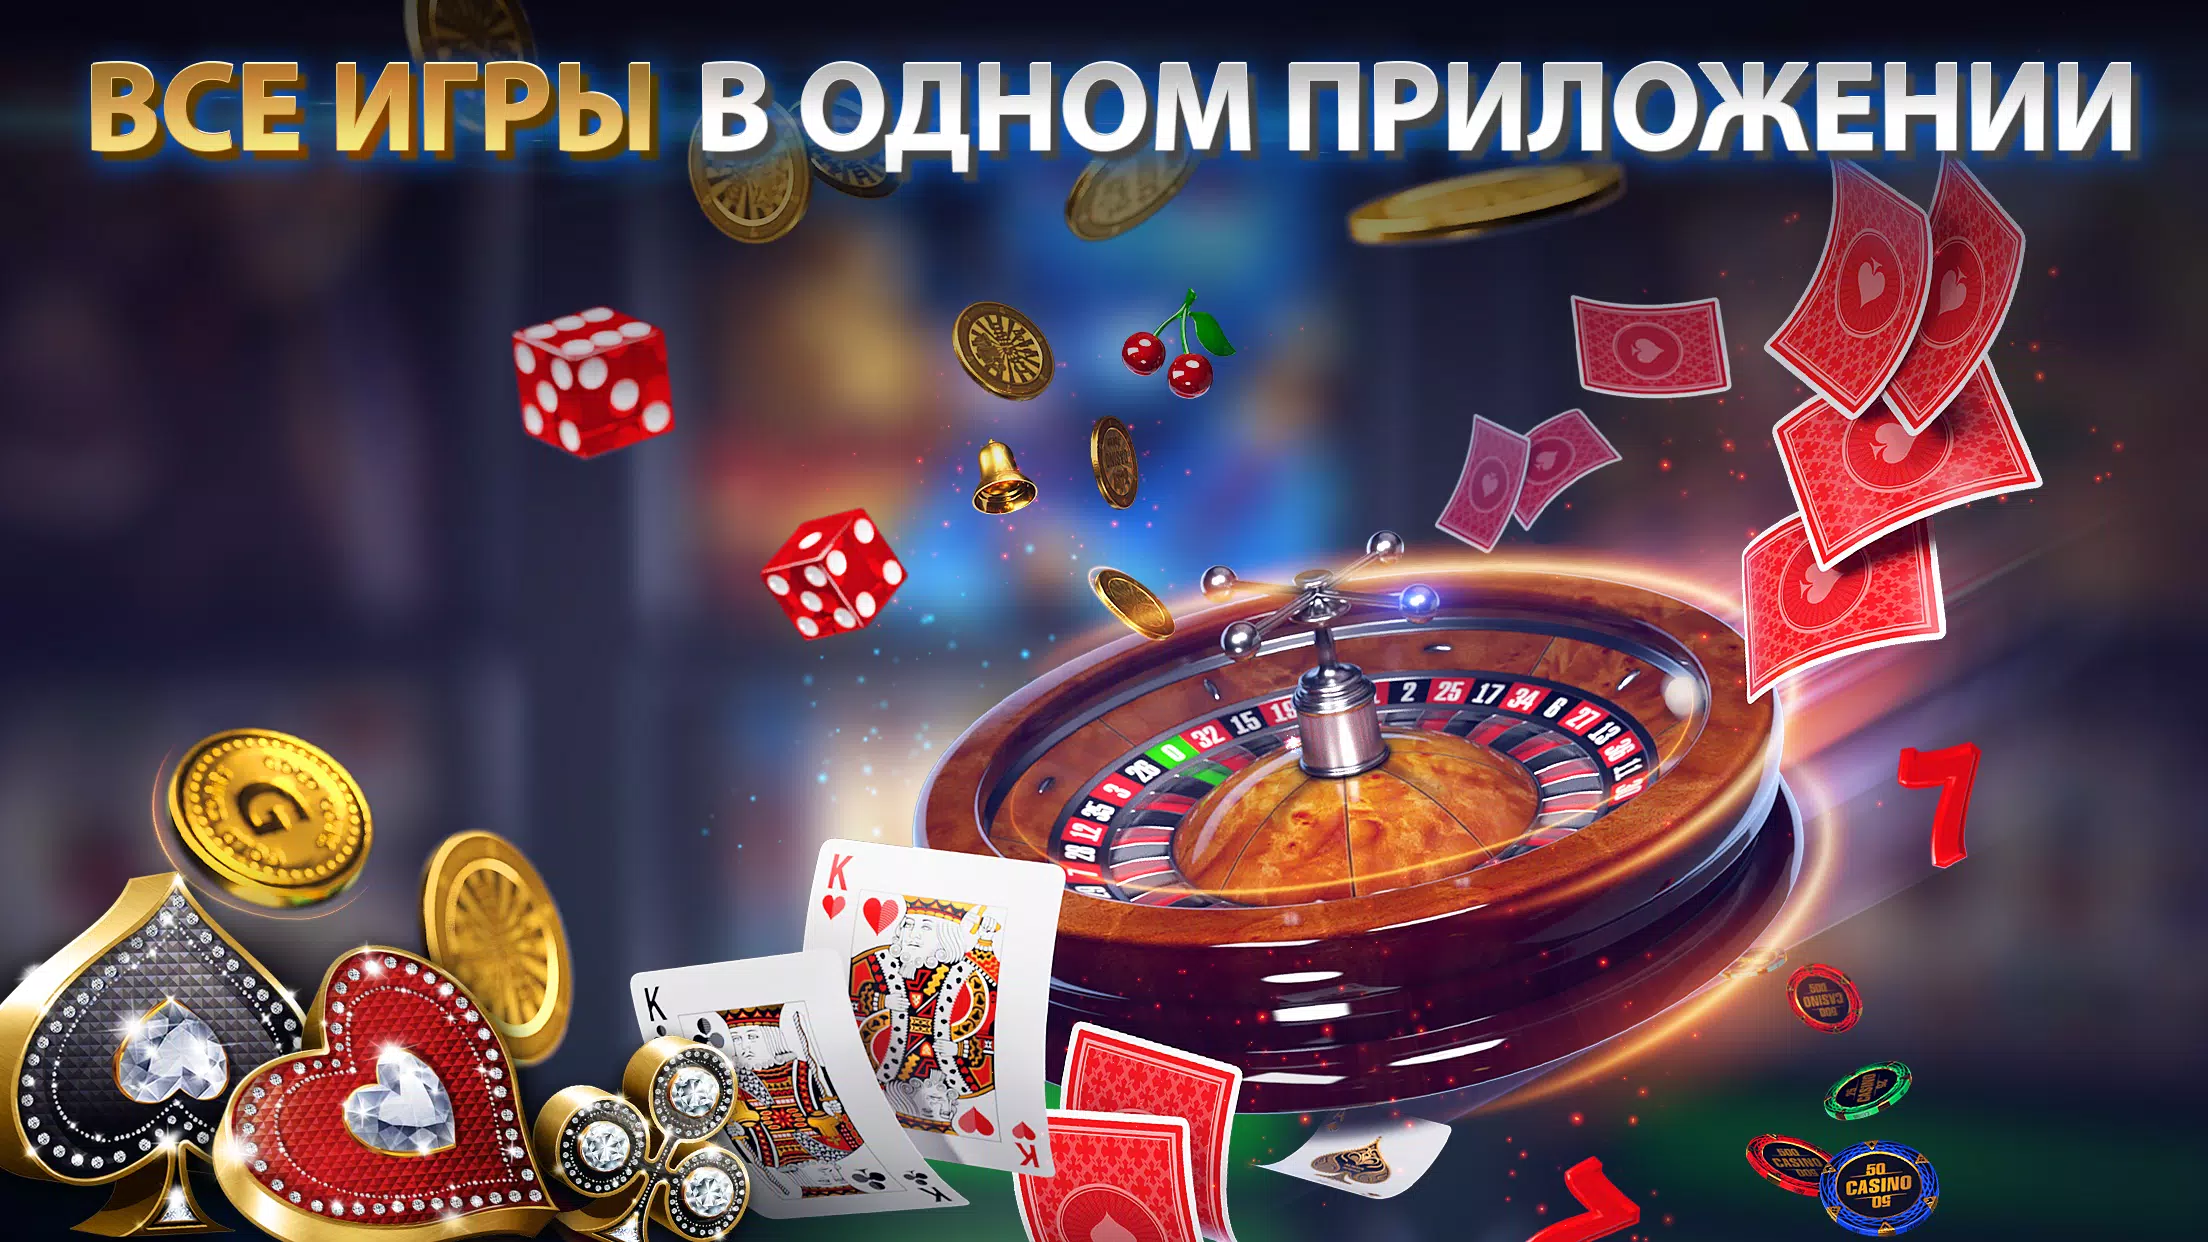 Покер омаха онлайн бесплатно без регистрации казино азов сити онлайн